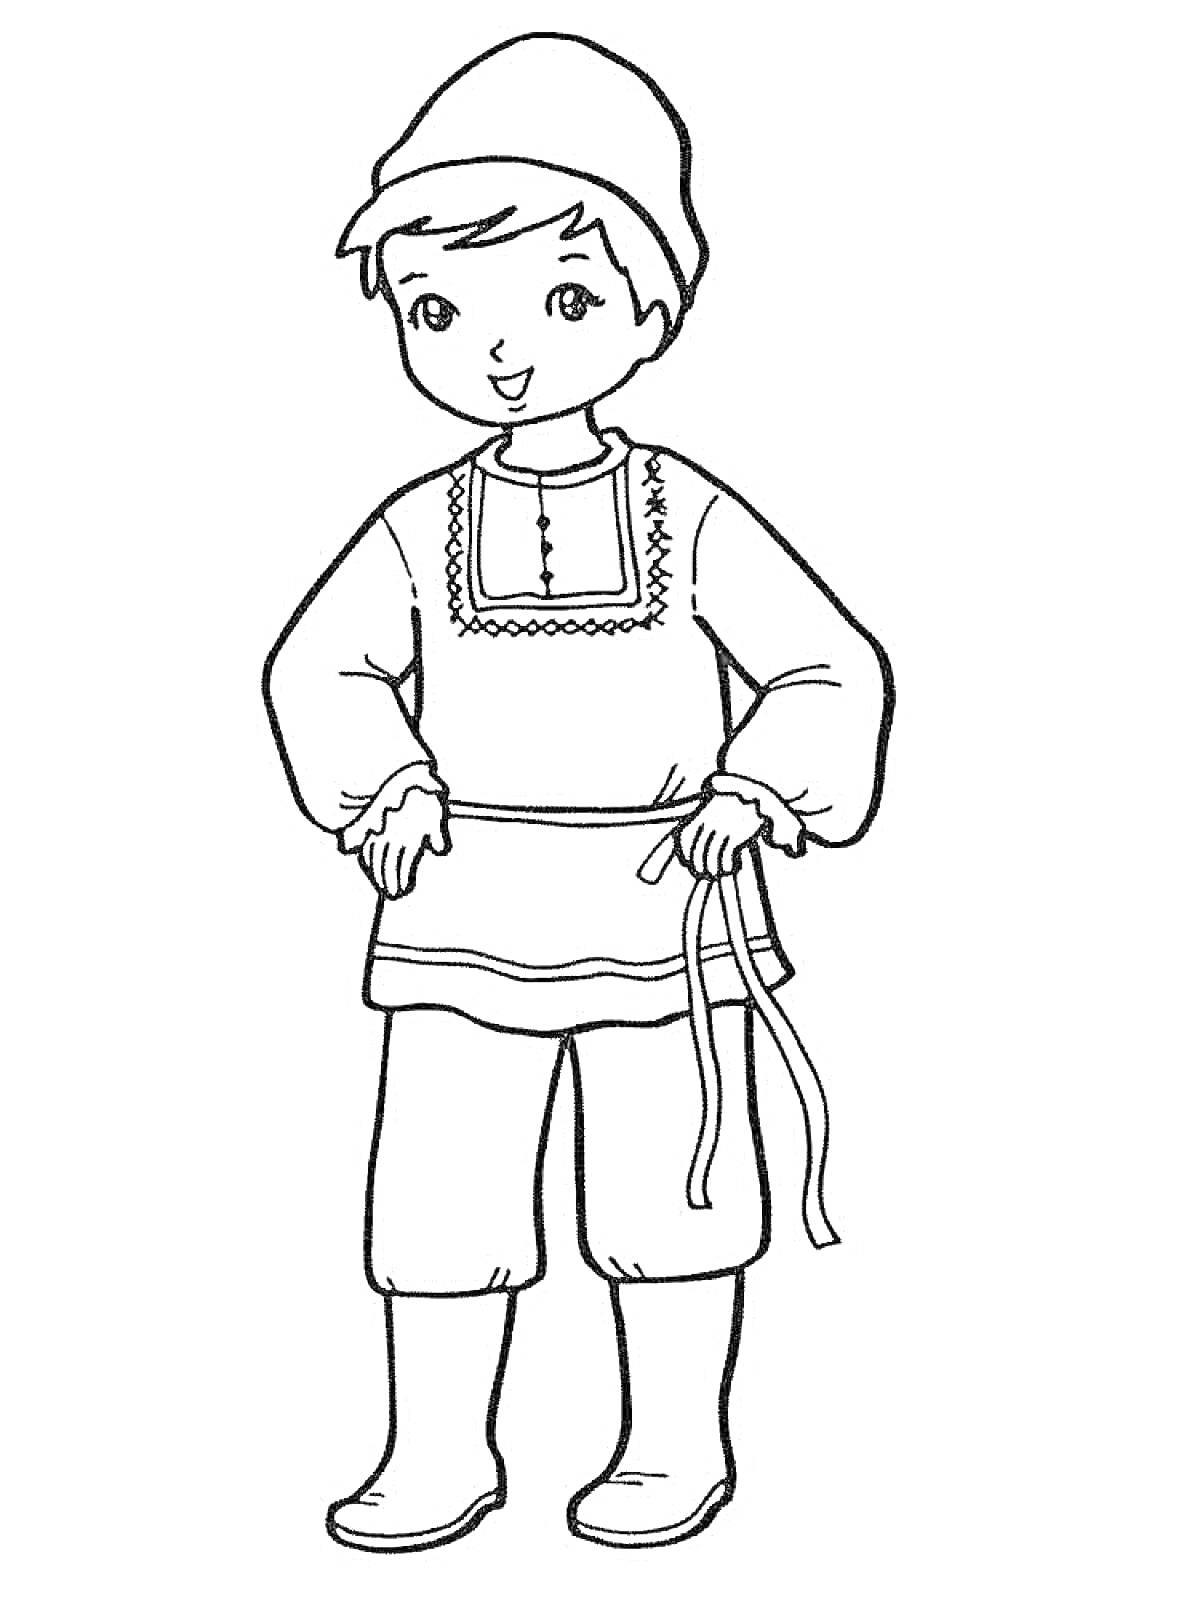 Раскраска Мальчик в русском народном костюме с рубахой, штанами, поясом, сапогами и шапкой